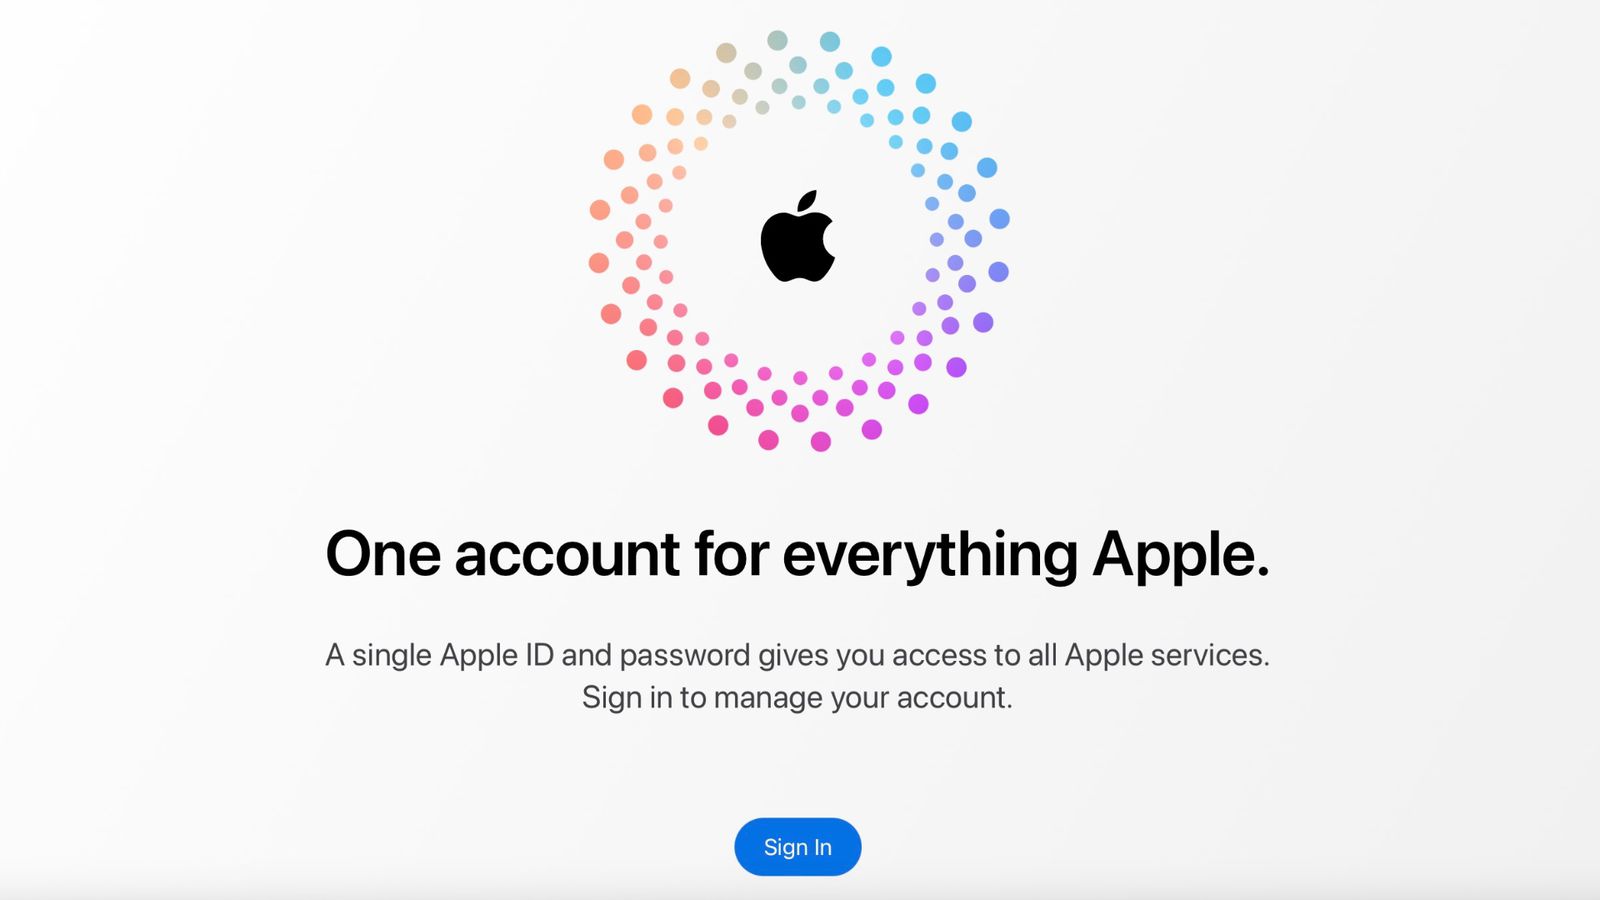 من iPhoneIslam.com، شعار Apple محاط بدائرة ملونة من النقاط أعلى النص "حساب واحد لكل شيء Apple"، مع زر "تسجيل الدخول" أدناه، واردة في أخبار الهامش